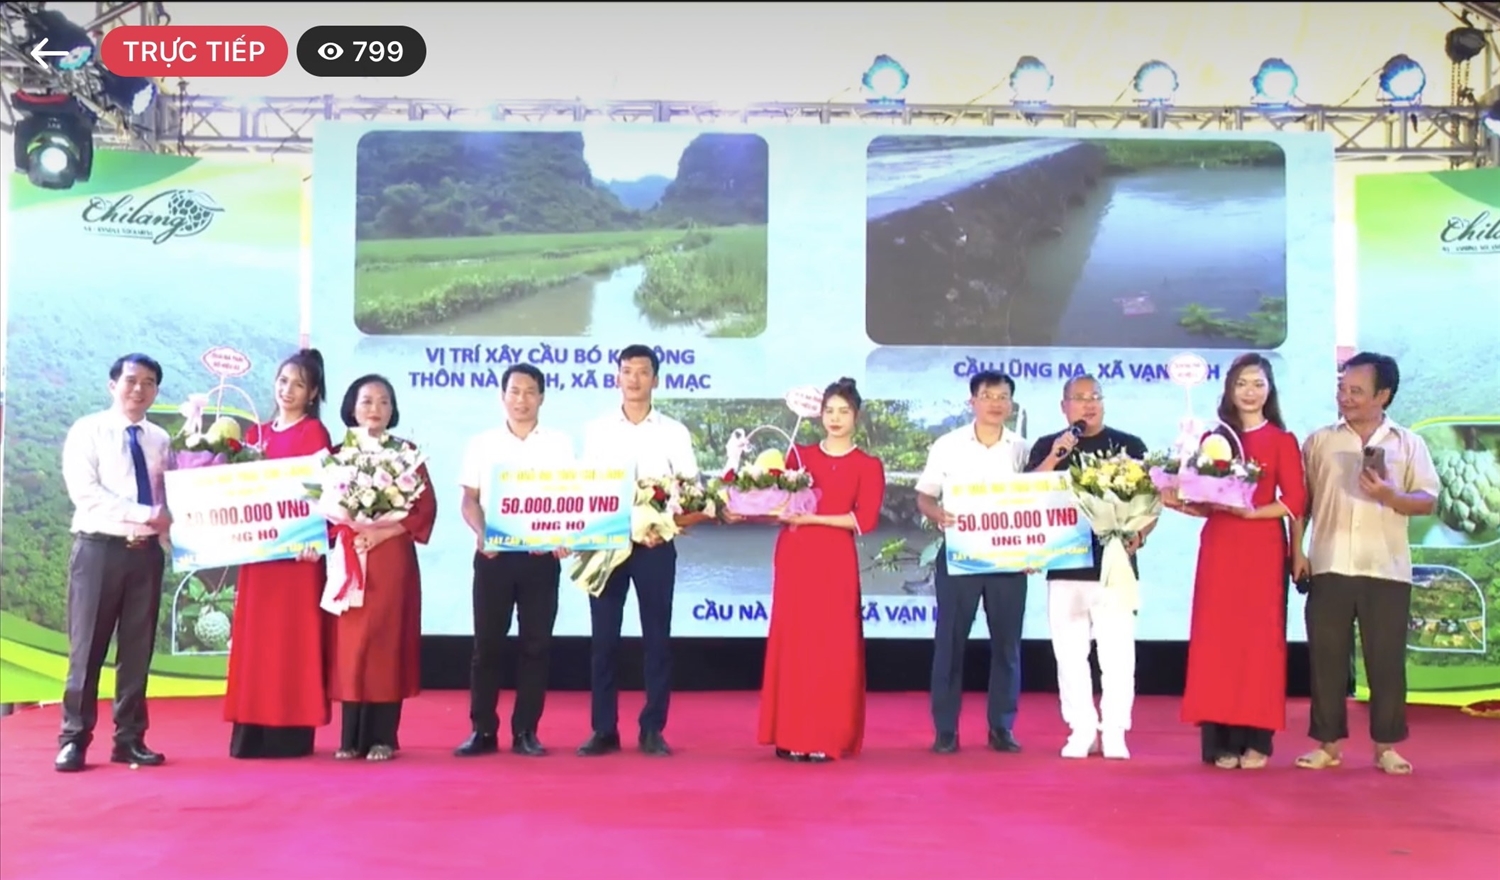 Chương trình được các nghệ sĩ và Fanpage "Trang tin huyện Chi Lăng" livestream trực tiếp trên mạng xã hội Facebook 